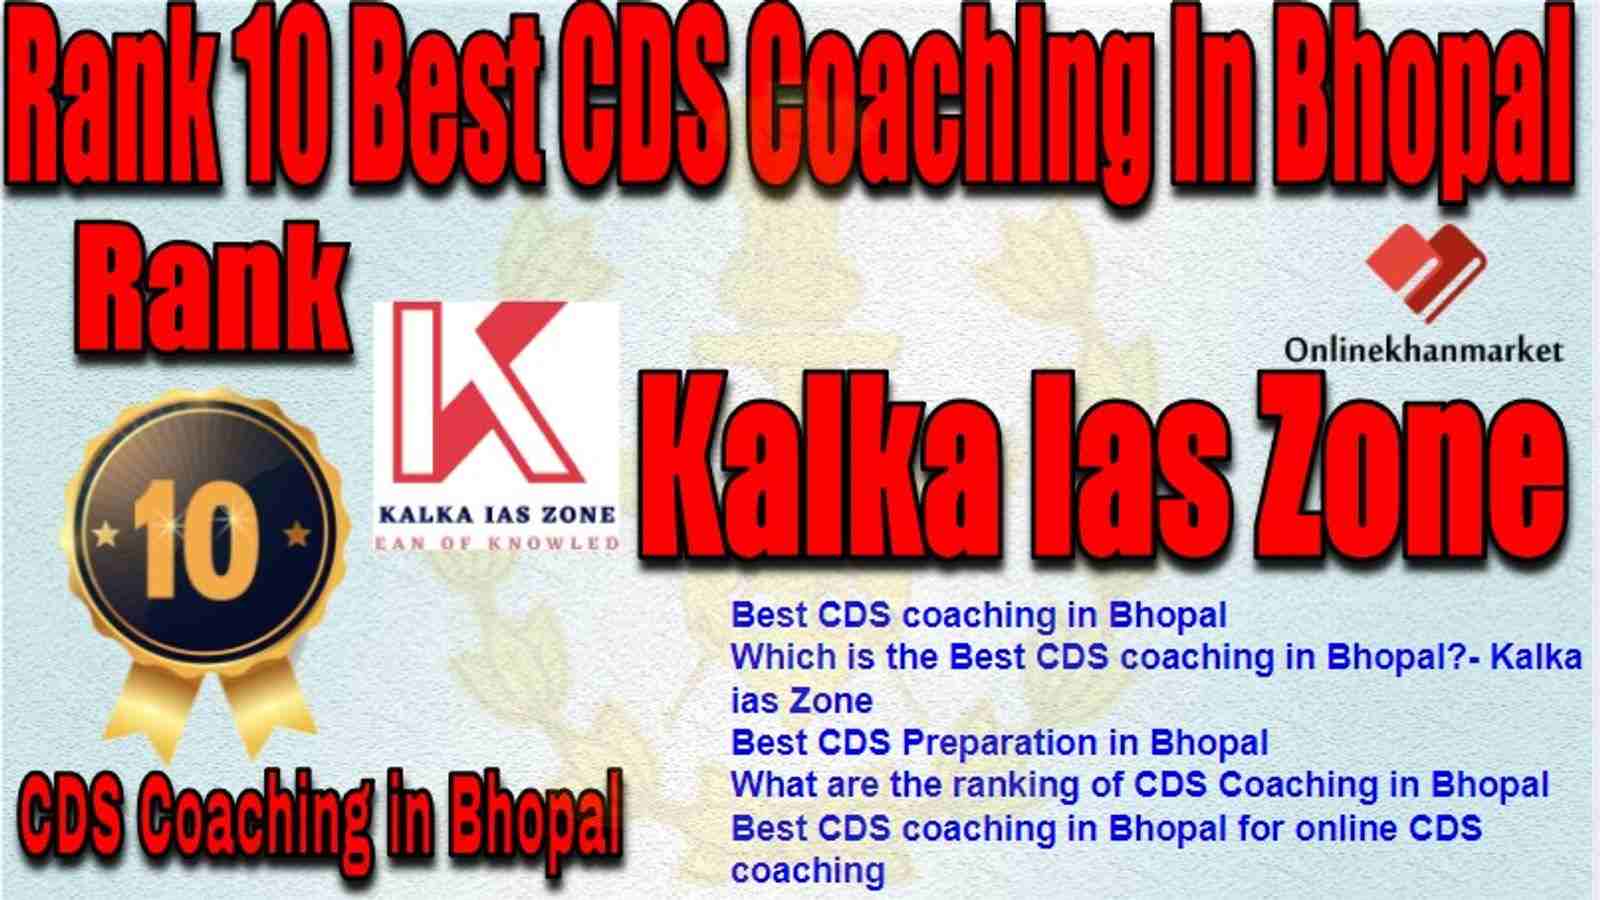 Rank 10 Best CDS Coaching in bhopal